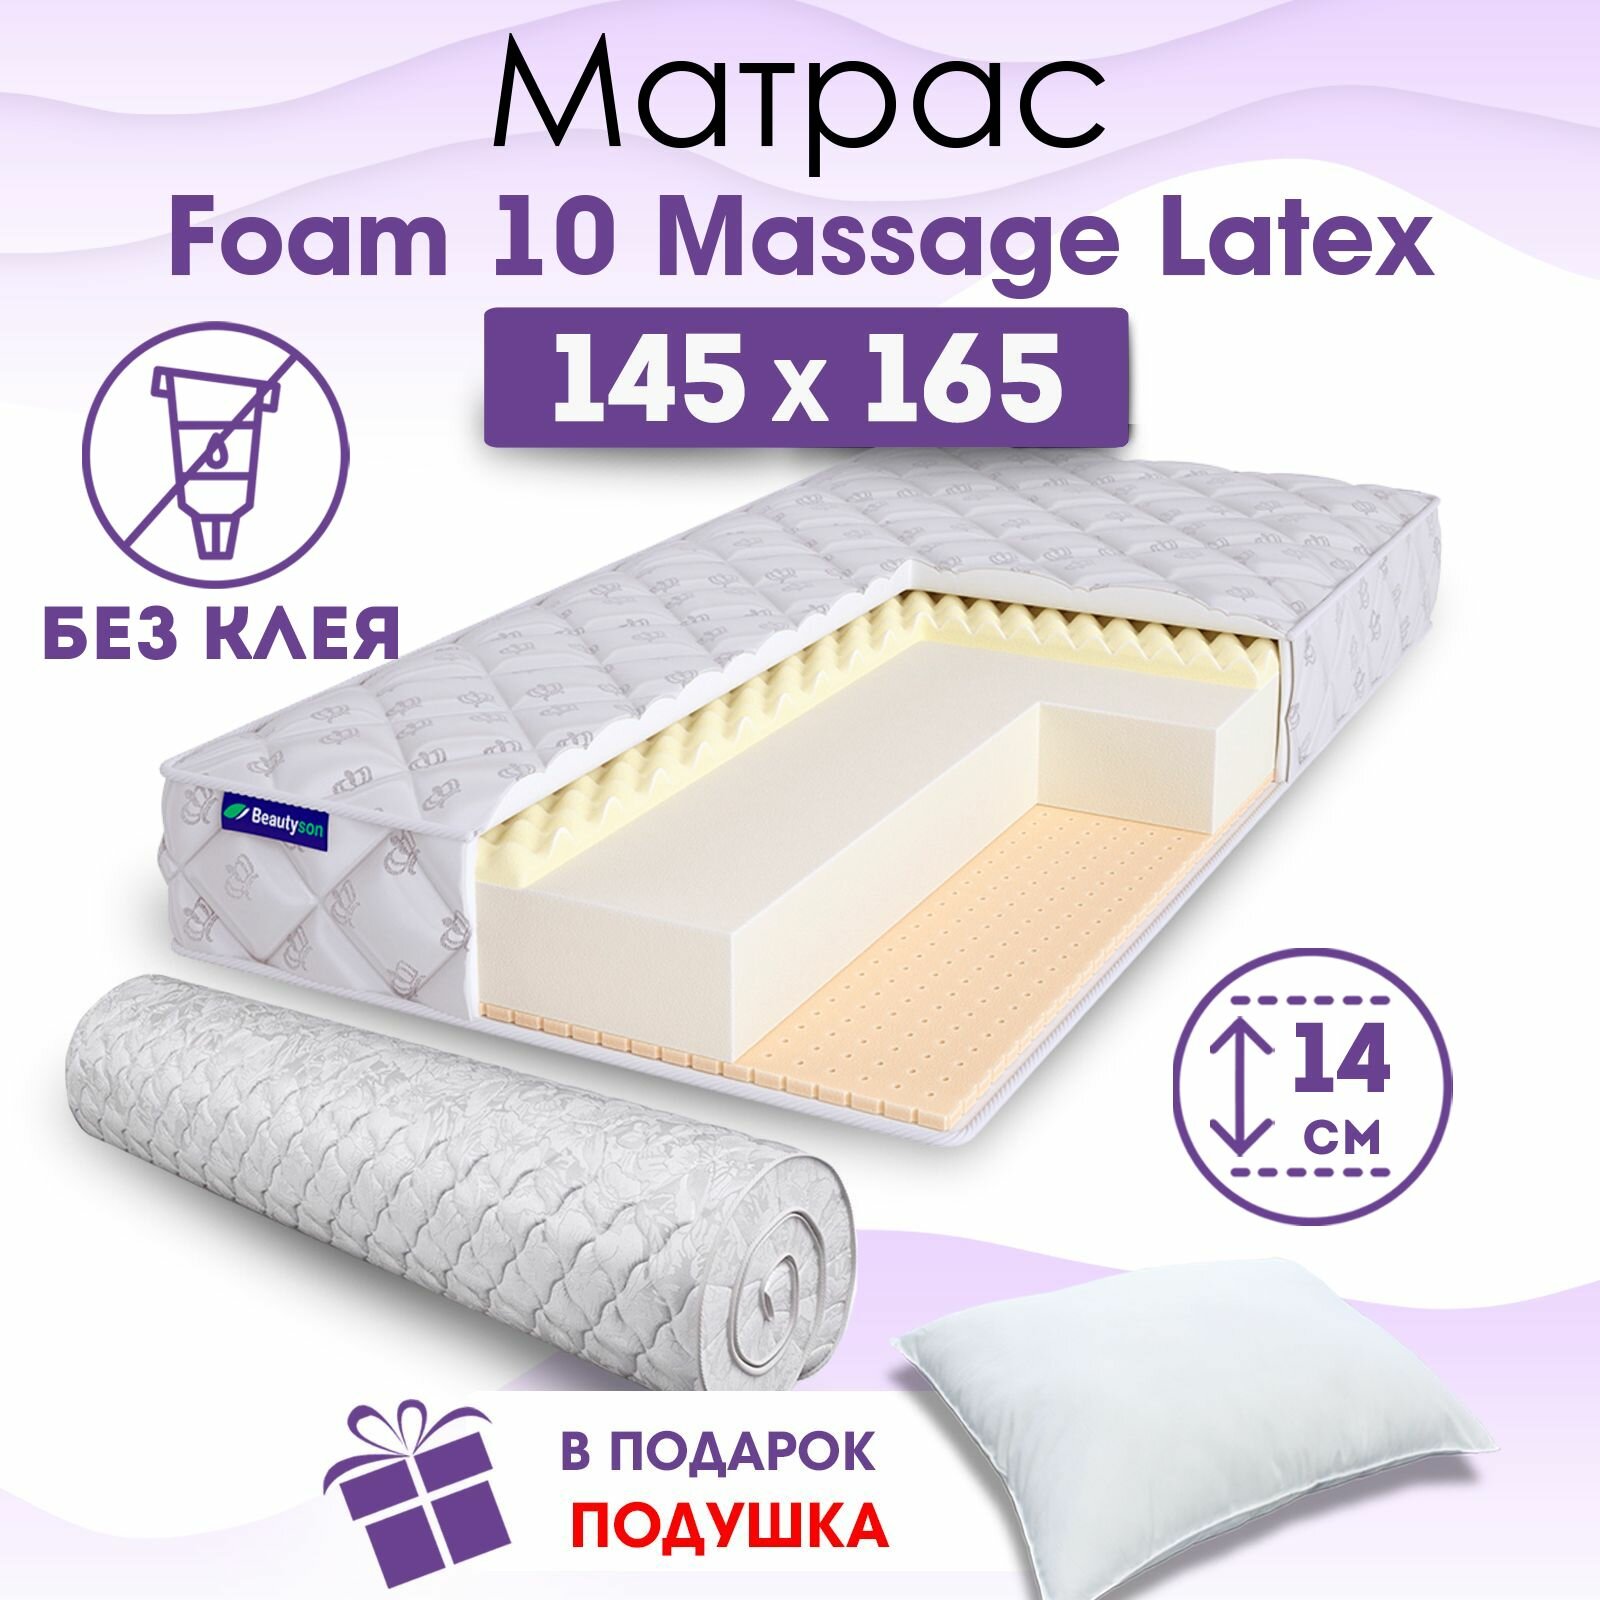 Ортопедический матрас Beautyson Foam 10 Massage Latex без клея, 145х165, 14 см, беспружинный, двуспальный, на кровать, для дивана, мягкий, не высокий